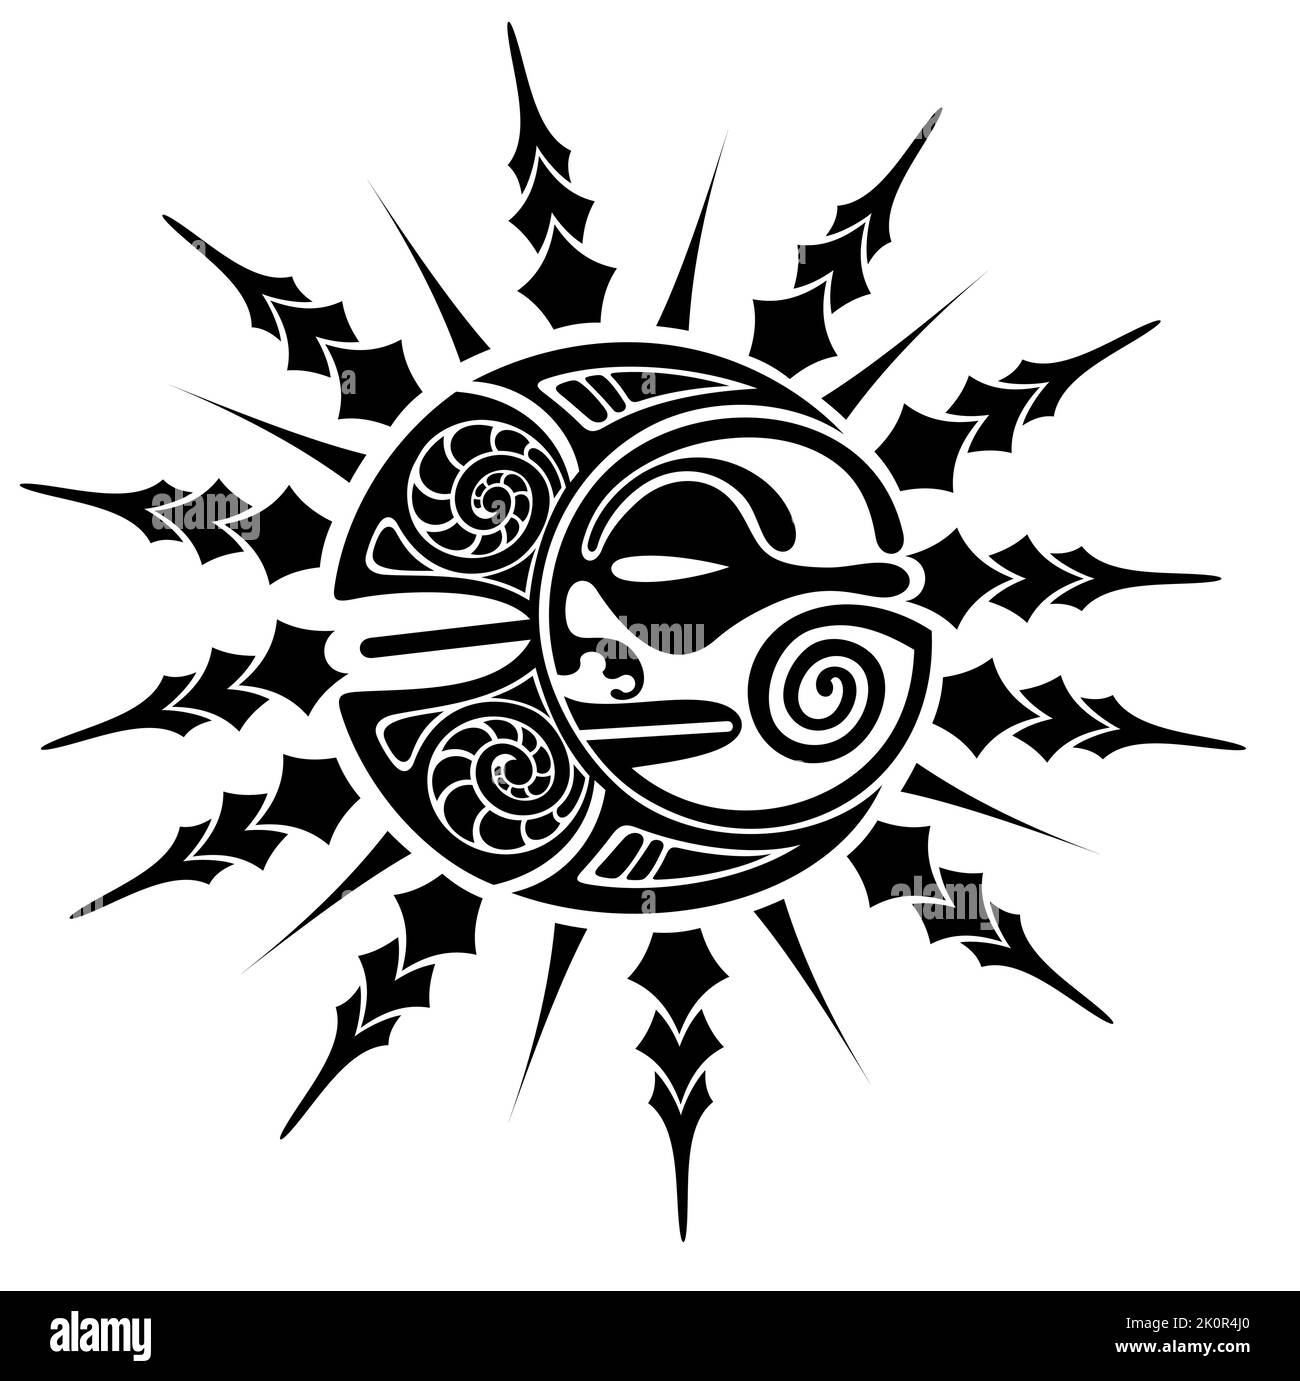 Disegno del tatuaggio in stile maori, sole e luna. Ornamento tribale rotondo. Illustrazione vettoriale Illustrazione Vettoriale